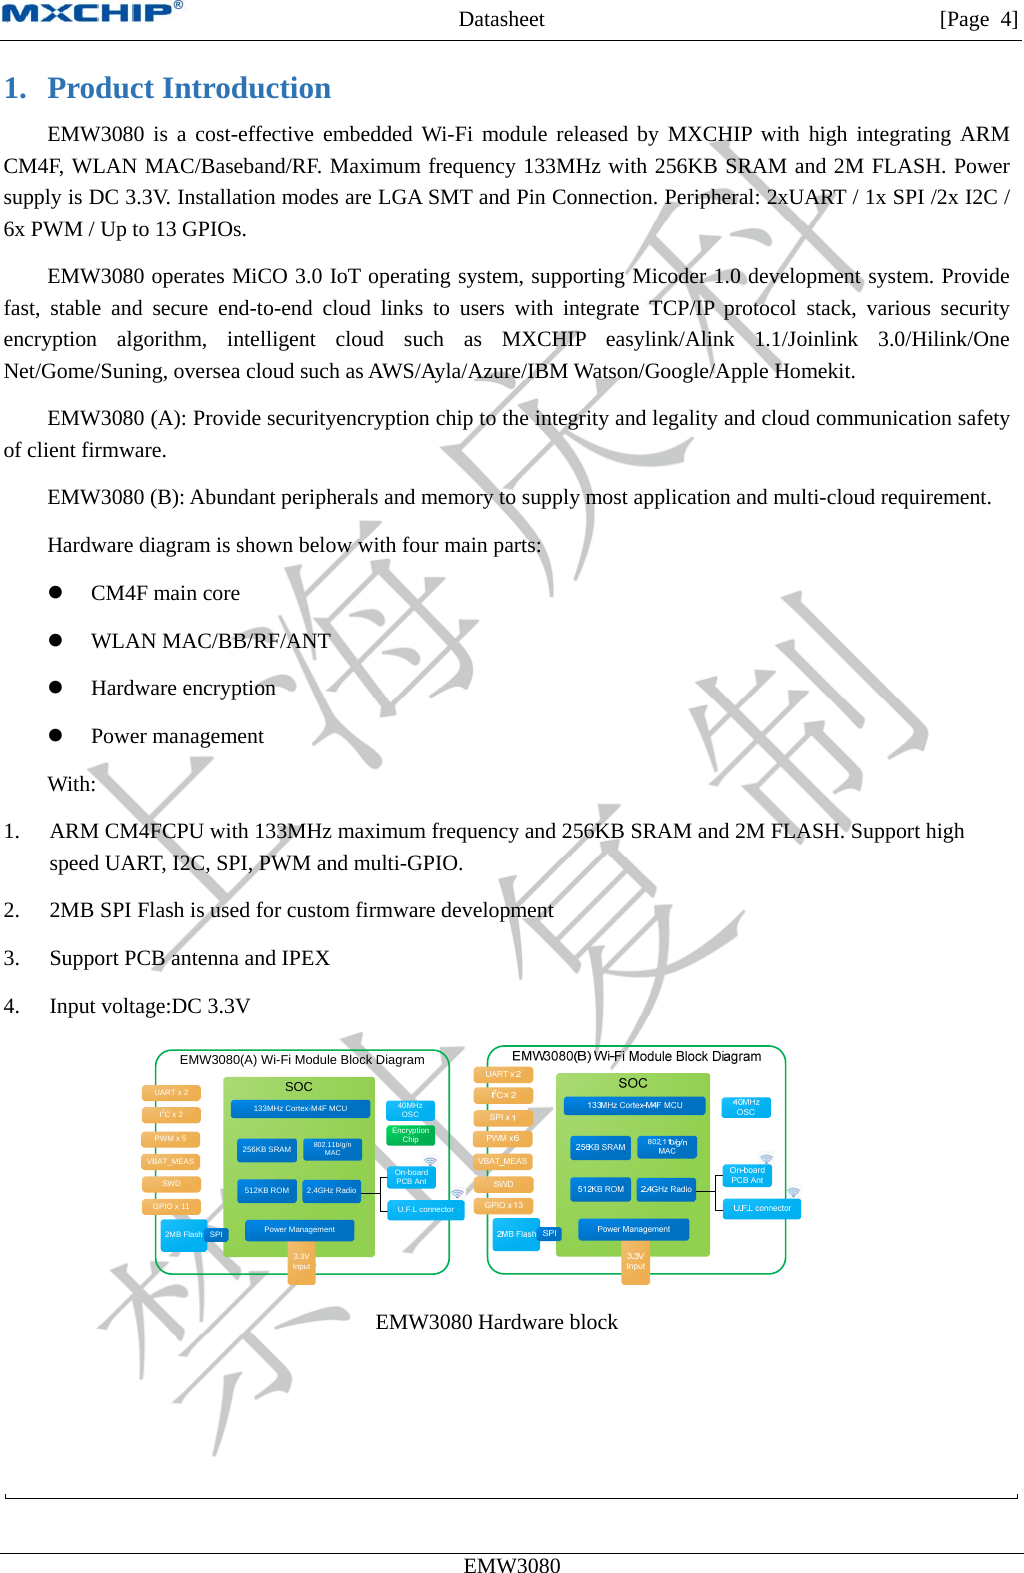 MXCHIP All Rights Reserved无法显示图像。计算机可能没有足够的内存以打开该图像，也可能是该图像已损坏。请重新启动计算机，然后重新打开该文件。如果仍然显示红色“x”，则可能需要删除该图像，然后重新将其插入。Datasheet         [Page 4] EMW3080  1. Product Introduction EMW3080 is a cost-effective embedded Wi-Fi module released by MXCHIP with high integrating ARM CM4F, WLAN MAC/Baseband/RF. Maximum frequency 133MHz with 256KB SRAM and 2M FLASH. Power supply is DC 3.3V. Installation modes are LGA SMT and Pin Connection. Peripheral: 2xUART / 1x SPI /2x I2C / 6x PWM / Up to 13 GPIOs. EMW3080 operates MiCO 3.0 IoT operating system, supporting Micoder 1.0 development system. Provide fast, stable and secure end-to-end cloud links to users with integrate TCP/IP protocol stack, various security encryption algorithm, intelligent cloud such as MXCHIP easylink/Alink 1.1/Joinlink 3.0/Hilink/One Net/Gome/Suning, oversea cloud such as AWS/Ayla/Azure/IBM Watson/Google/Apple Homekit. EMW3080 (A): Provide securityencryption chip to the integrity and legality and cloud communication safety of client firmware. EMW3080 (B): Abundant peripherals and memory to supply most application and multi-cloud requirement. Hardware diagram is shown below with four main parts:  CM4F main core  WLAN MAC/BB/RF/ANT  Hardware encryption  Power management With: 1. ARM CM4FCPU with 133MHz maximum frequency and 256KB SRAM and 2M FLASH. Support high speed UART, I2C, SPI, PWM and multi-GPIO. 2. 2MB SPI Flash is used for custom firmware development 3. Support PCB antenna and IPEX 4. Input voltage:DC 3.3V EMW3080(A) Wi-Fi Module Block DiagramSOC2.4GHz RadioU.F.L connectorOn-boardPCB Ant3.3V Input40MHzOSC256KB SRAM UART x 2I2Cx 2GPIO x 11Power Management802.11b/g/n MAC133MHz Cortex-M4F MCU512KB ROMSWD2MB Flash SPIPWM x 5 Encryption ChipVBAT_MEAS   EMW3080 Hardware block   